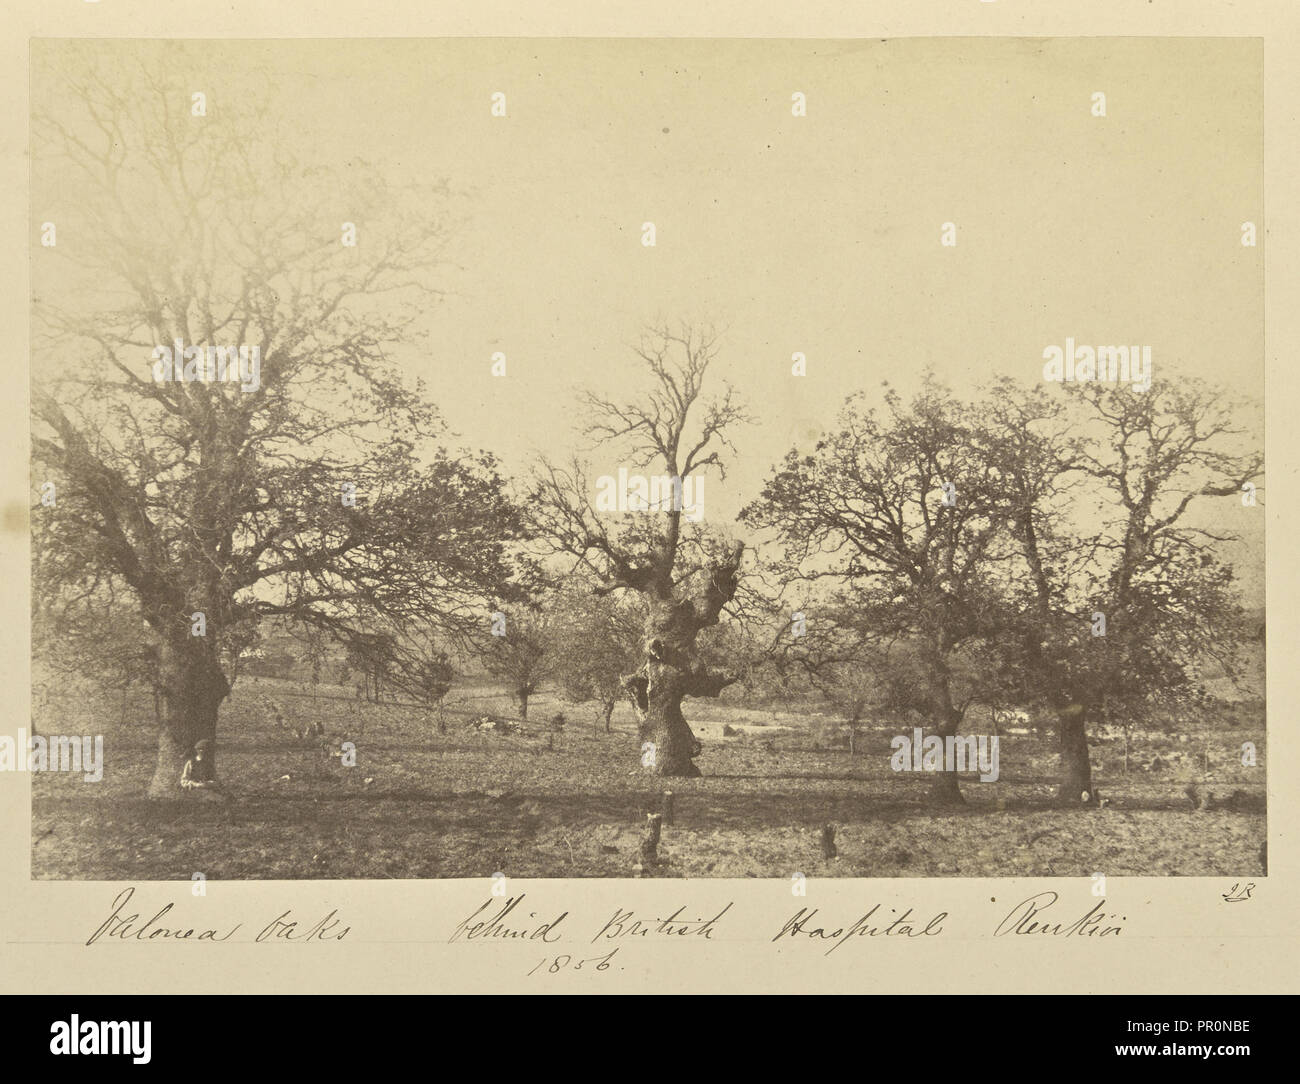 Valonea Oaks behind British Hospital Renkioi; John Kirk, Scottish, 1832 - 1922, Renkioi, Turkey; 1856; Albumen silver print Stock Photo